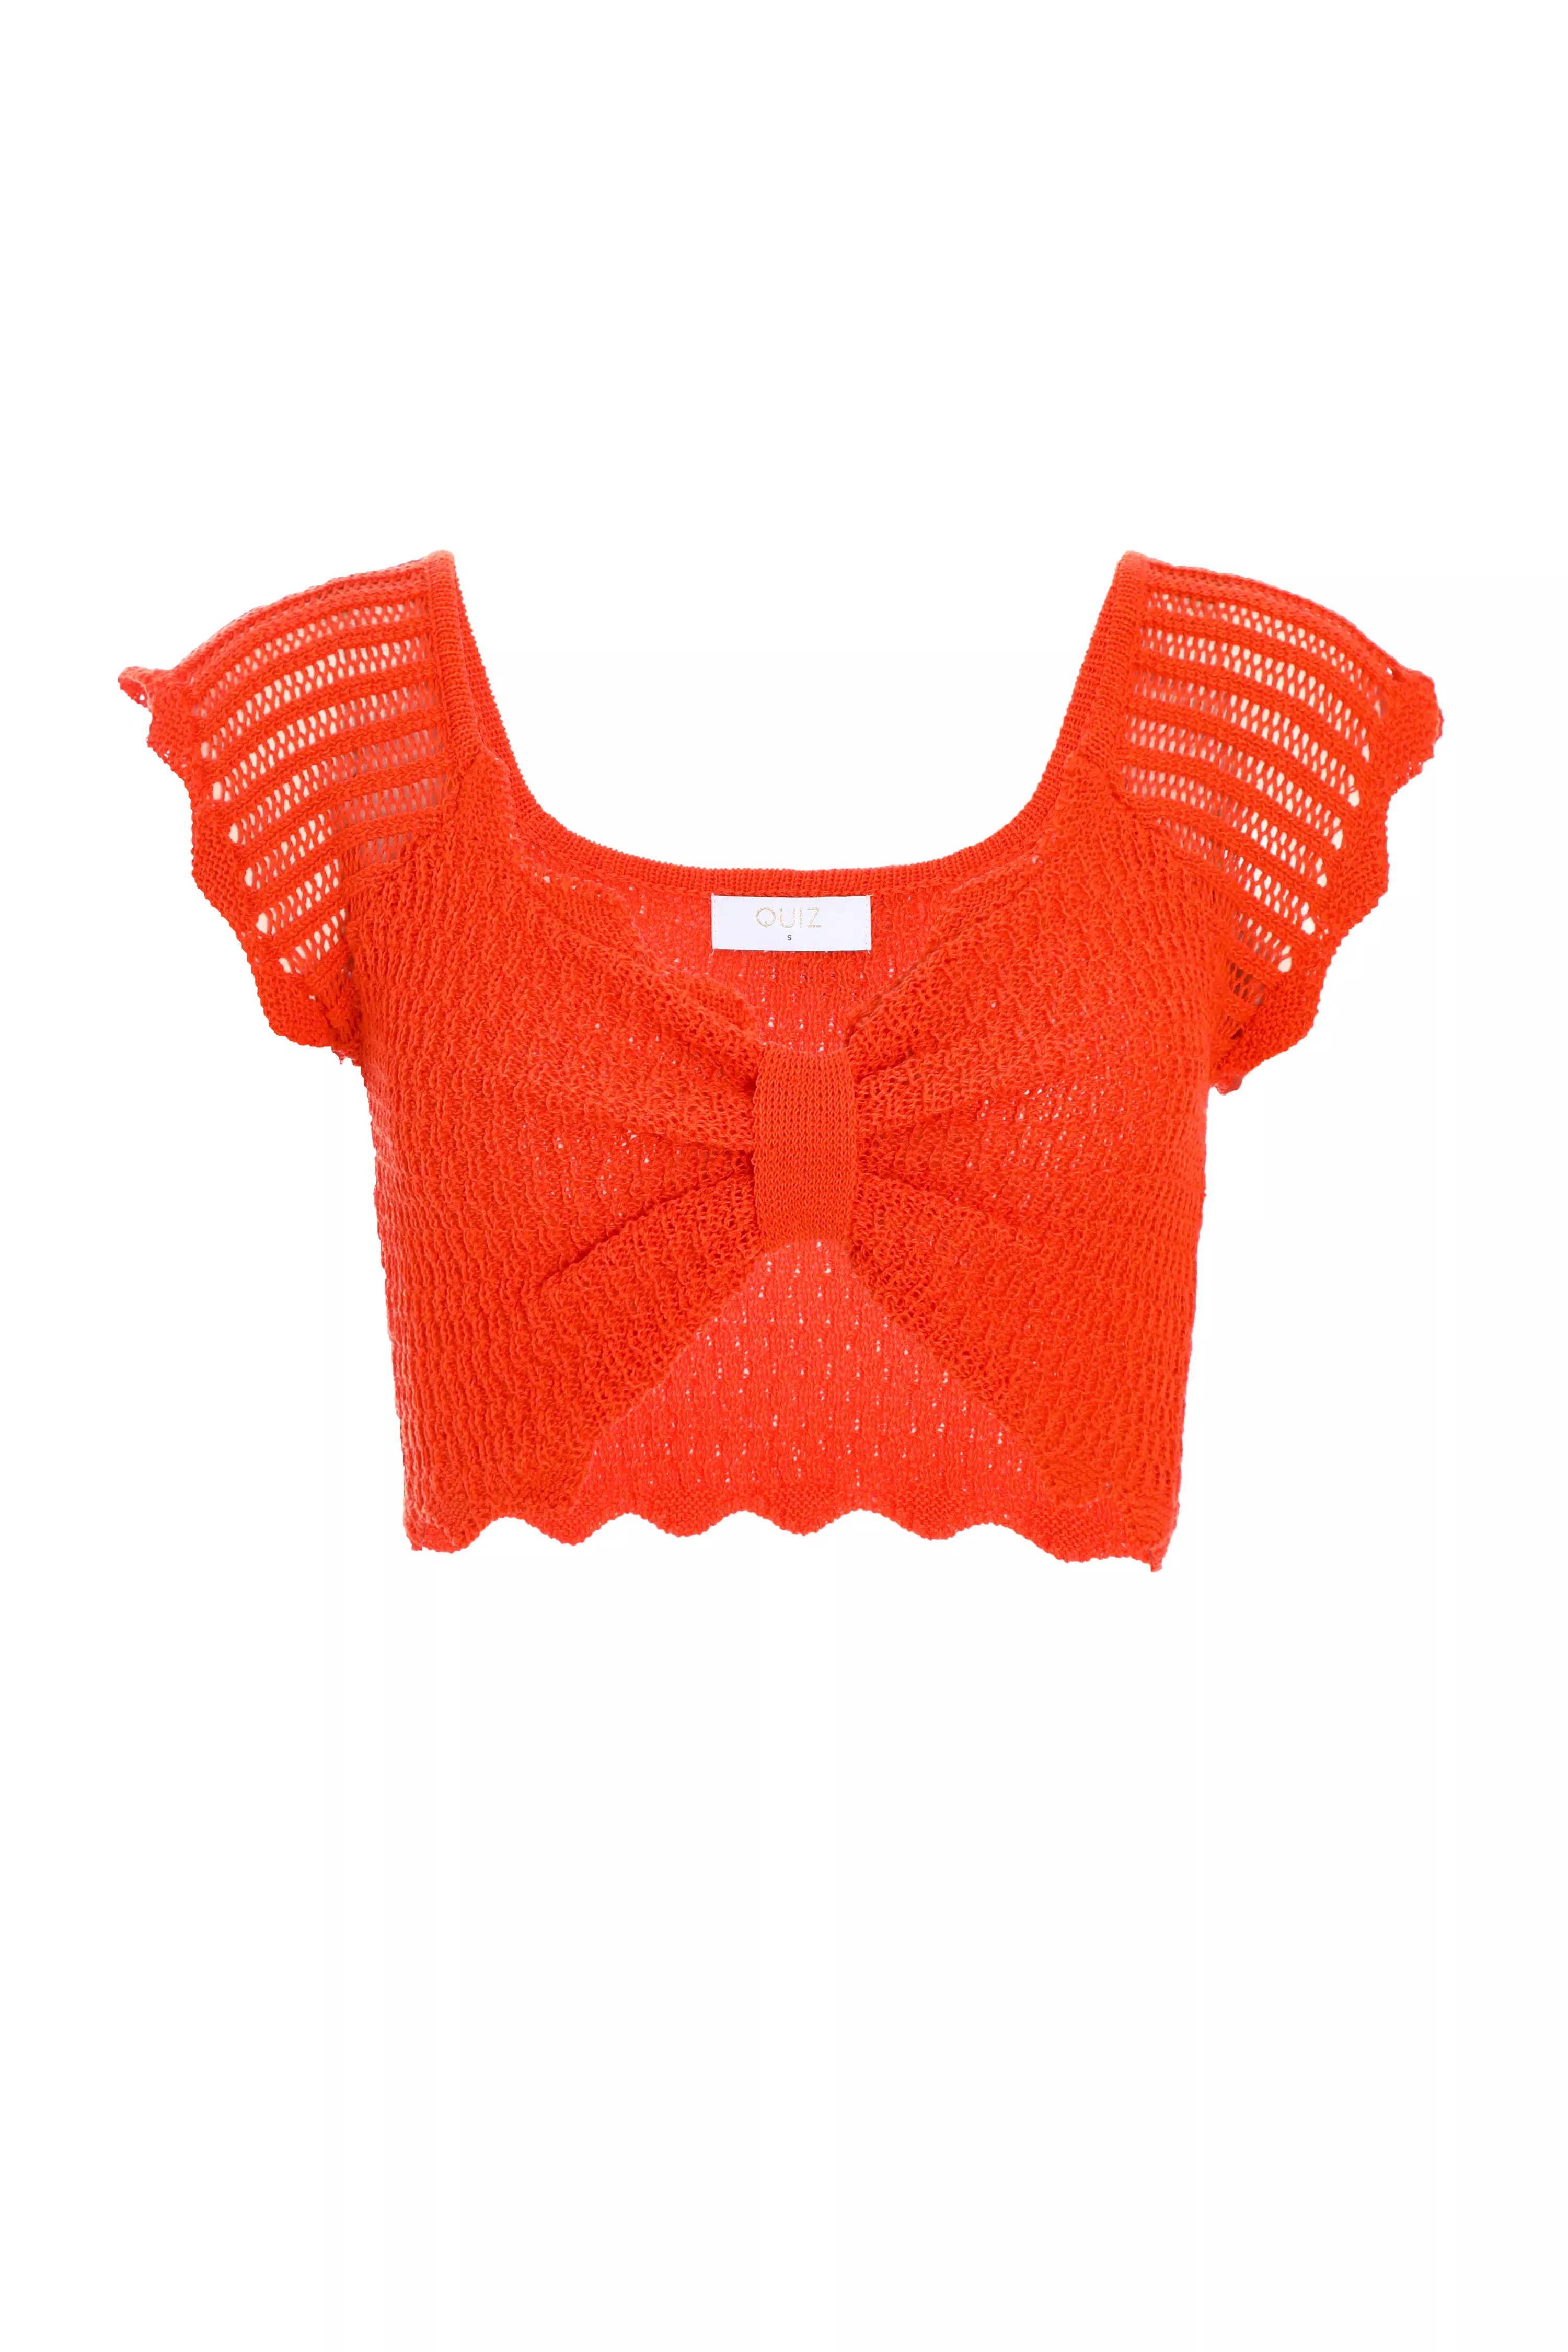 Orange Crochet Crop Top